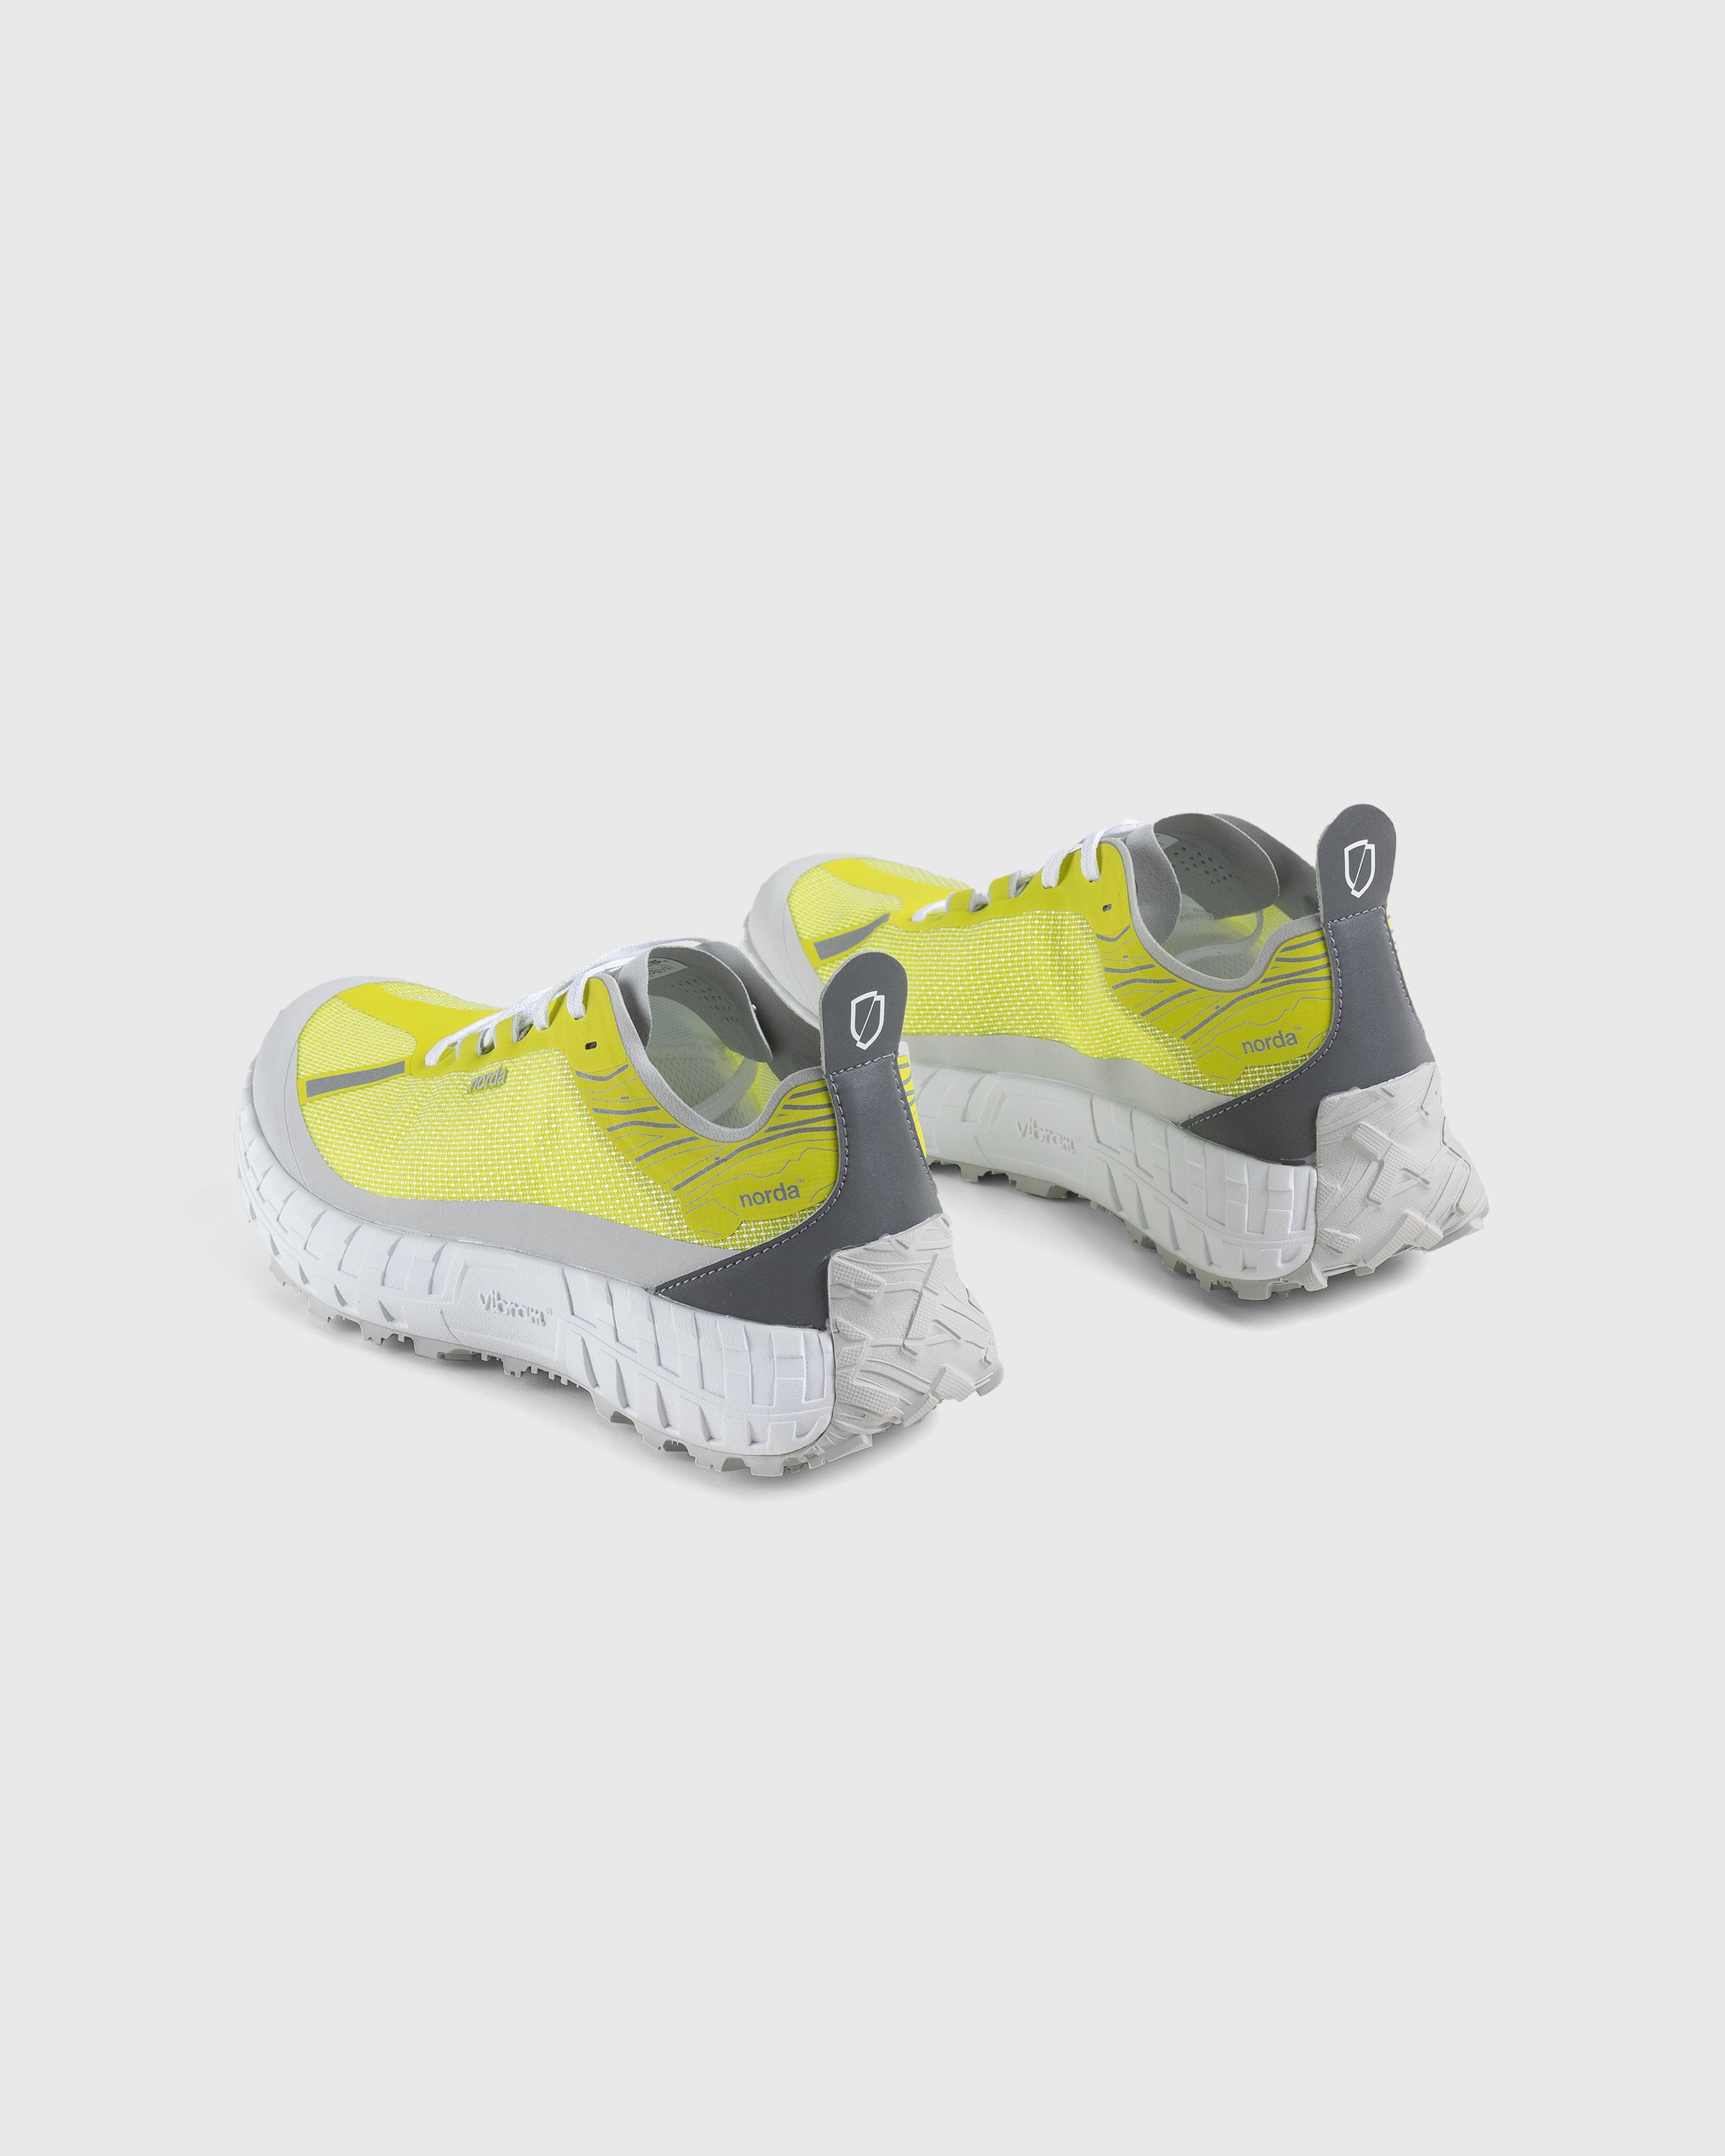 Norda - 001 M Sulphur - Footwear - Yellow - Image 4